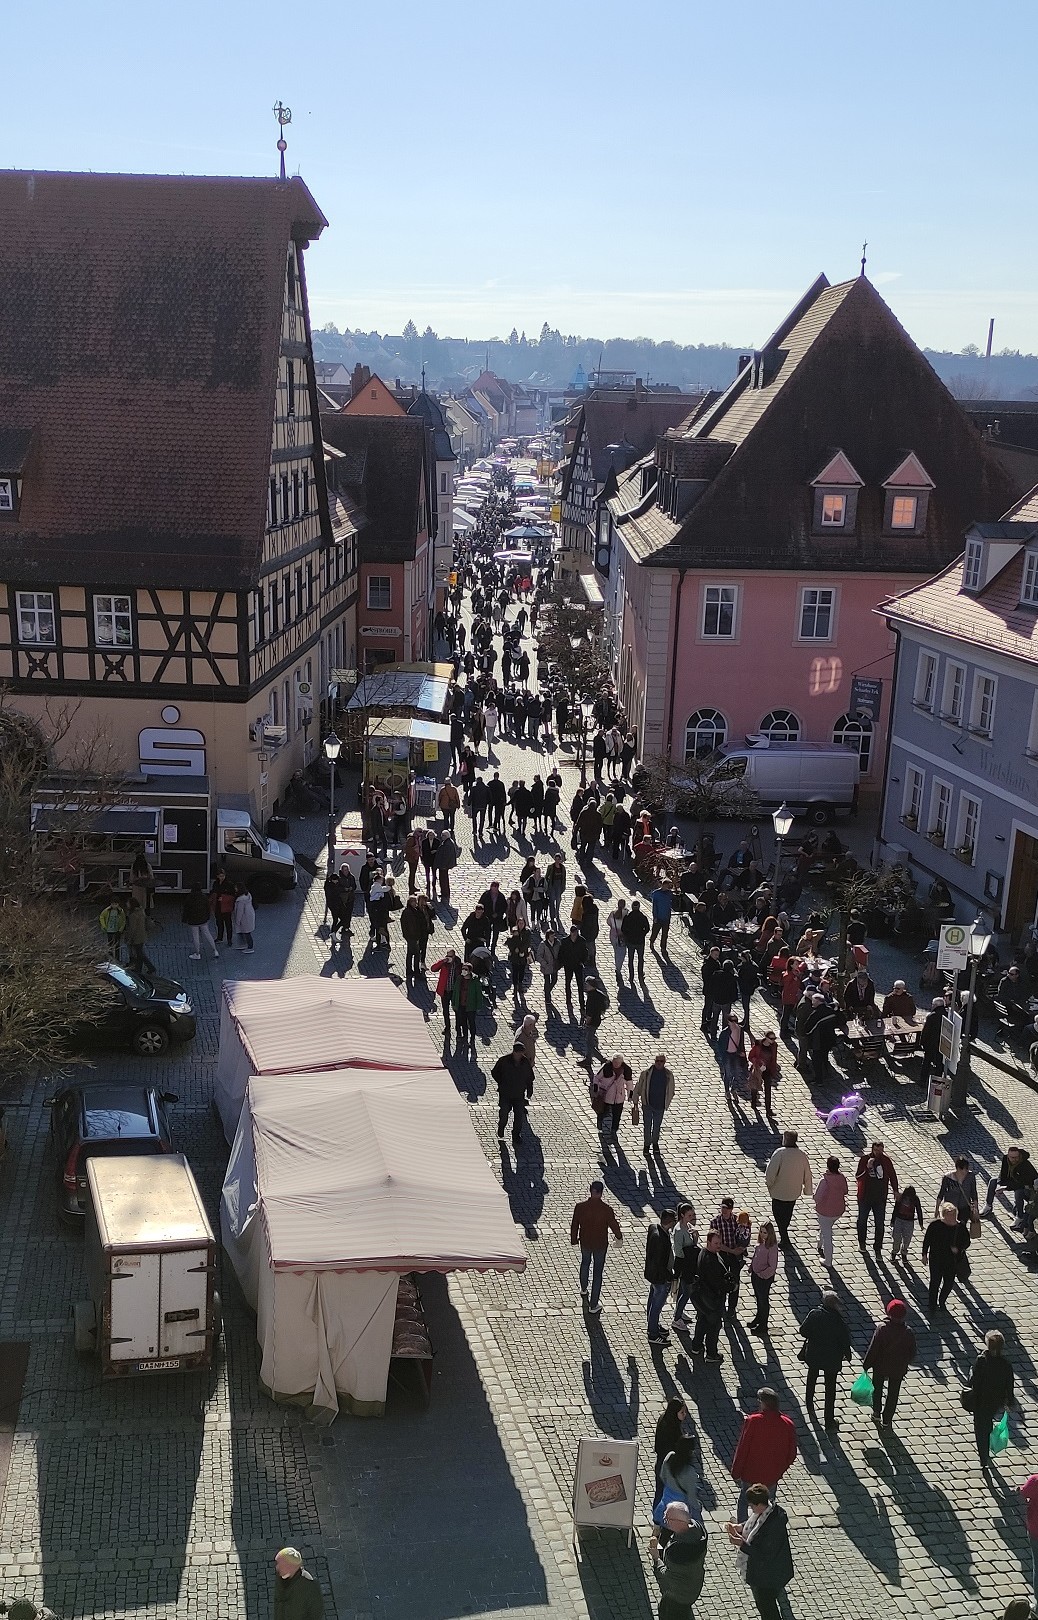 Marktplatz mit Marktständen in Neustadt a.d.Aisch